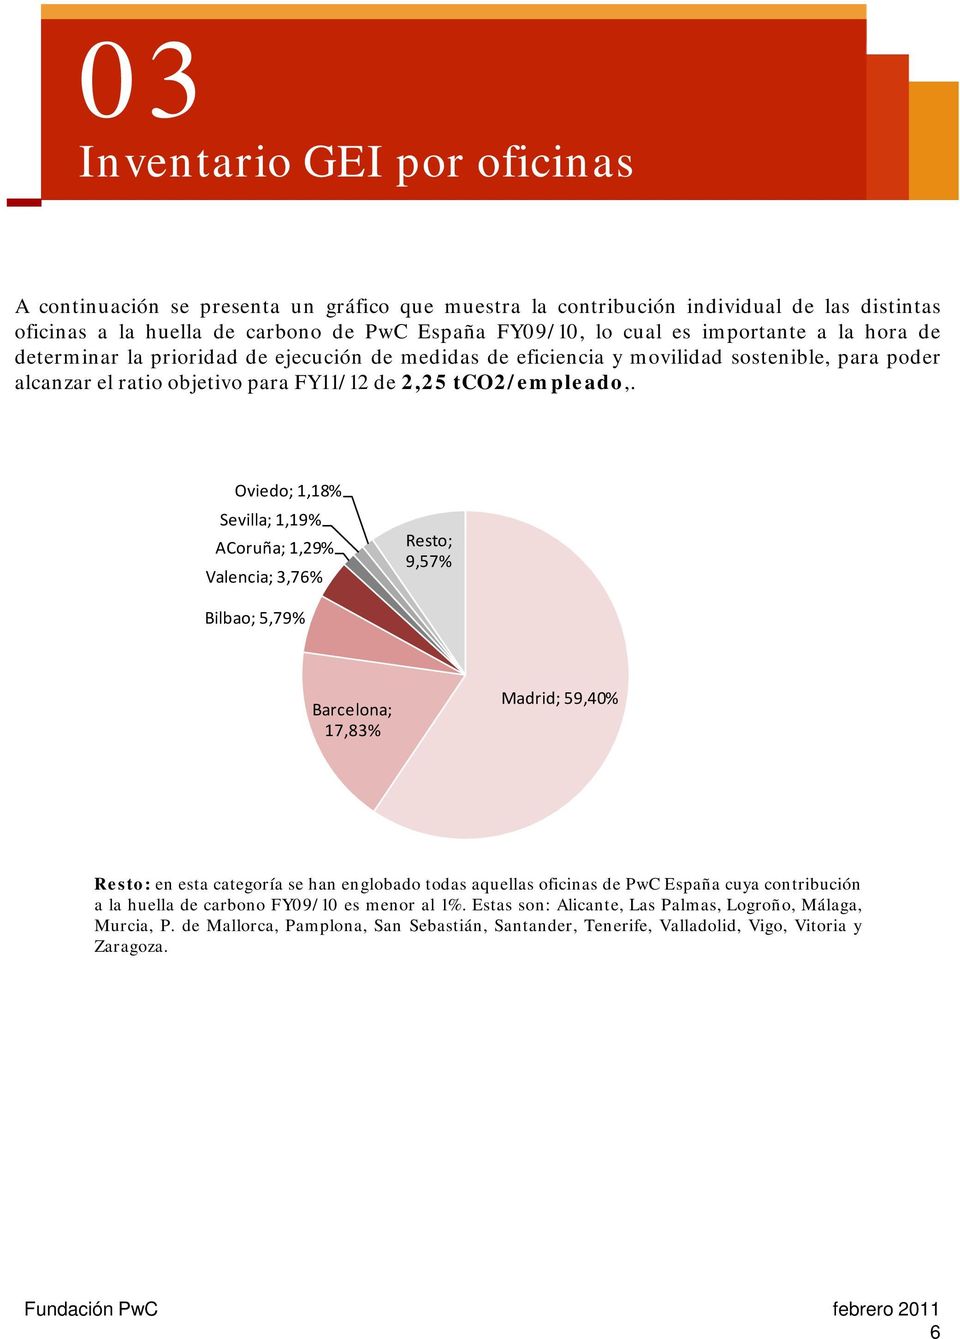 Oviedo; 1,18% Sevilla; 1,19% ACoruña; 1,29% Valencia; 3,76% Resto; 9,57% Bilbao; 5,79% Barcelona; 17,83% Madrid; 59,40% Resto: en esta categoría se han englobado todas aquellas oficinas de PwC España